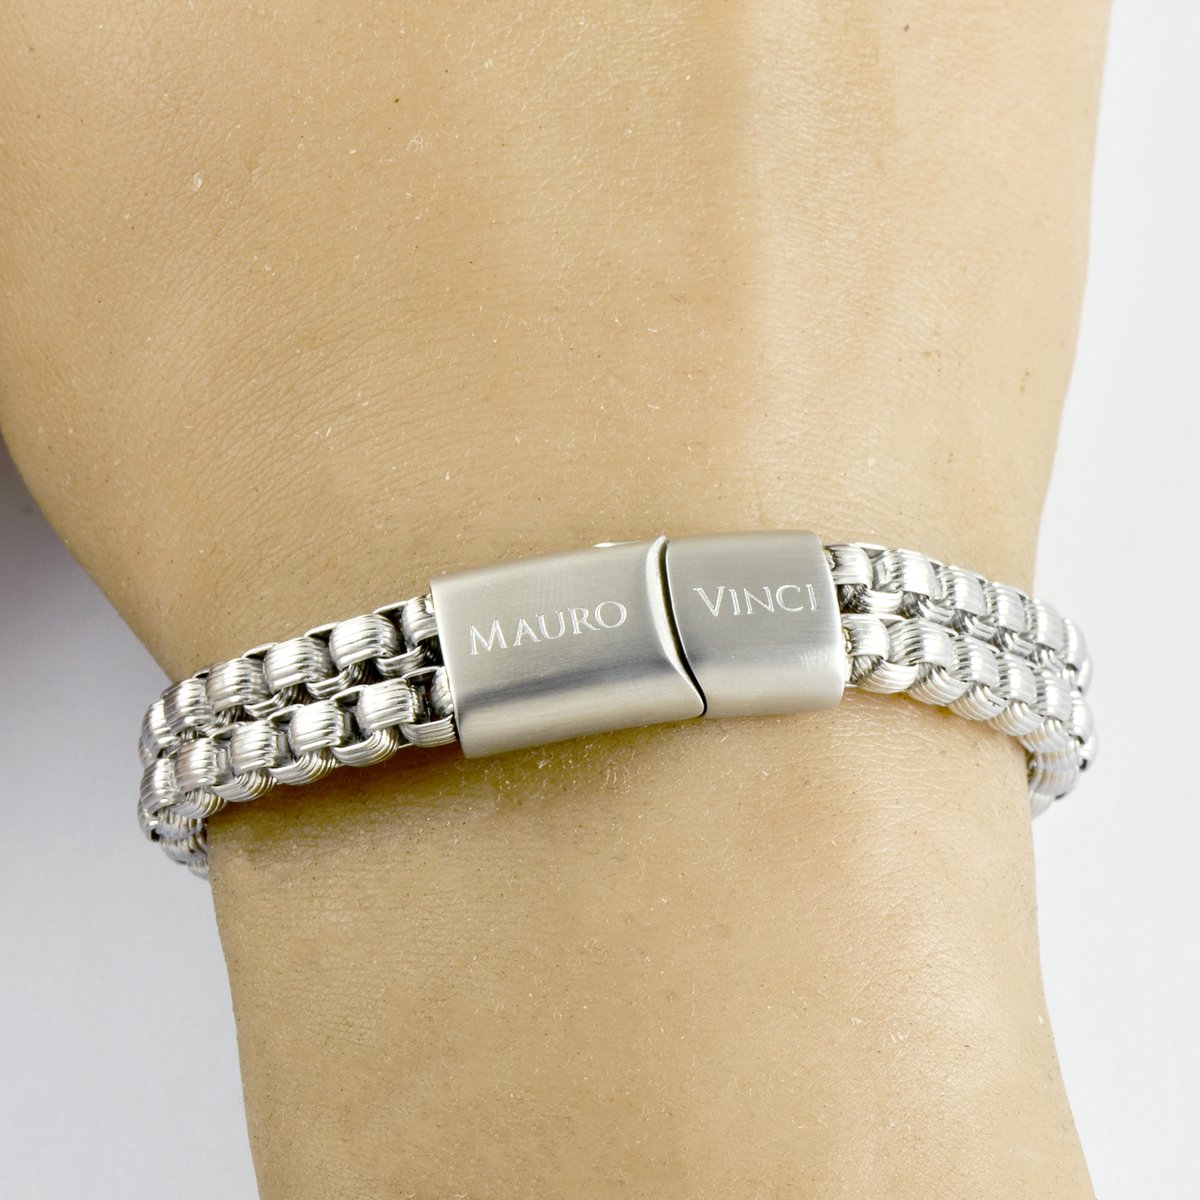 Stalen armband geborsteld mat Mauro Vinci Cili 21cm - Armband staal met magnetische sluiting en geschenkverpakking